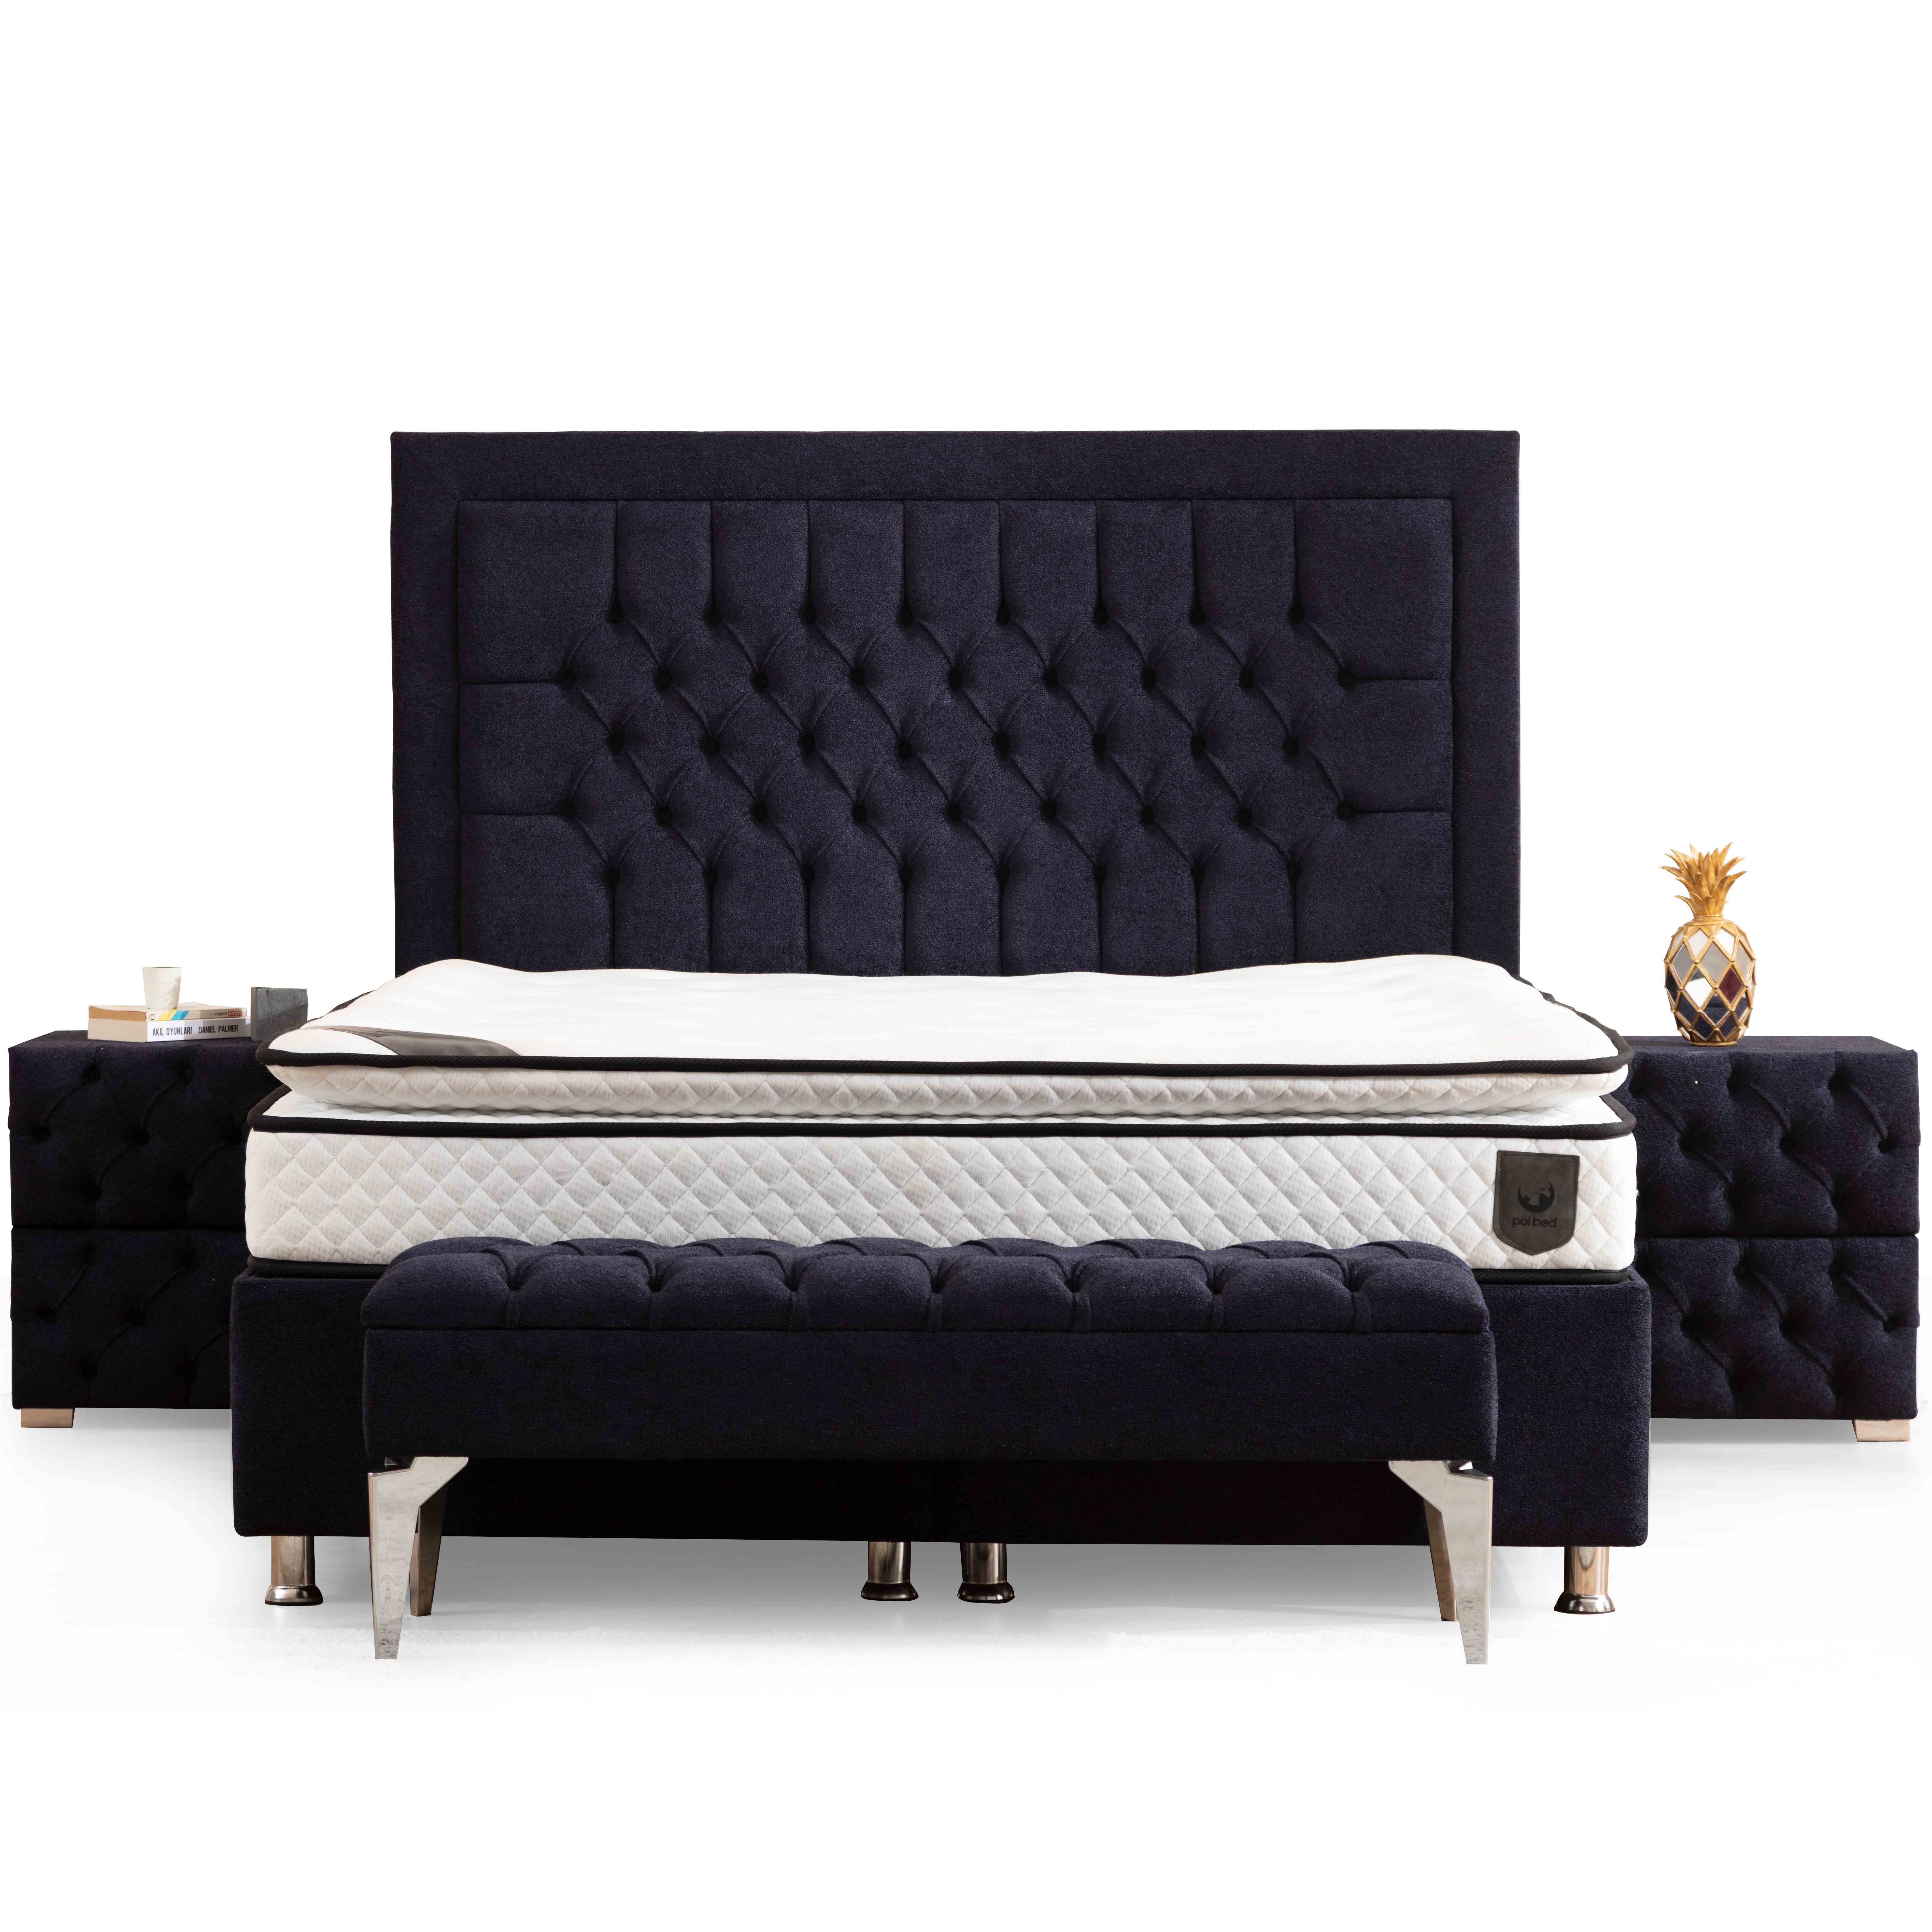 Astom Bed With Storage 120x200 cm